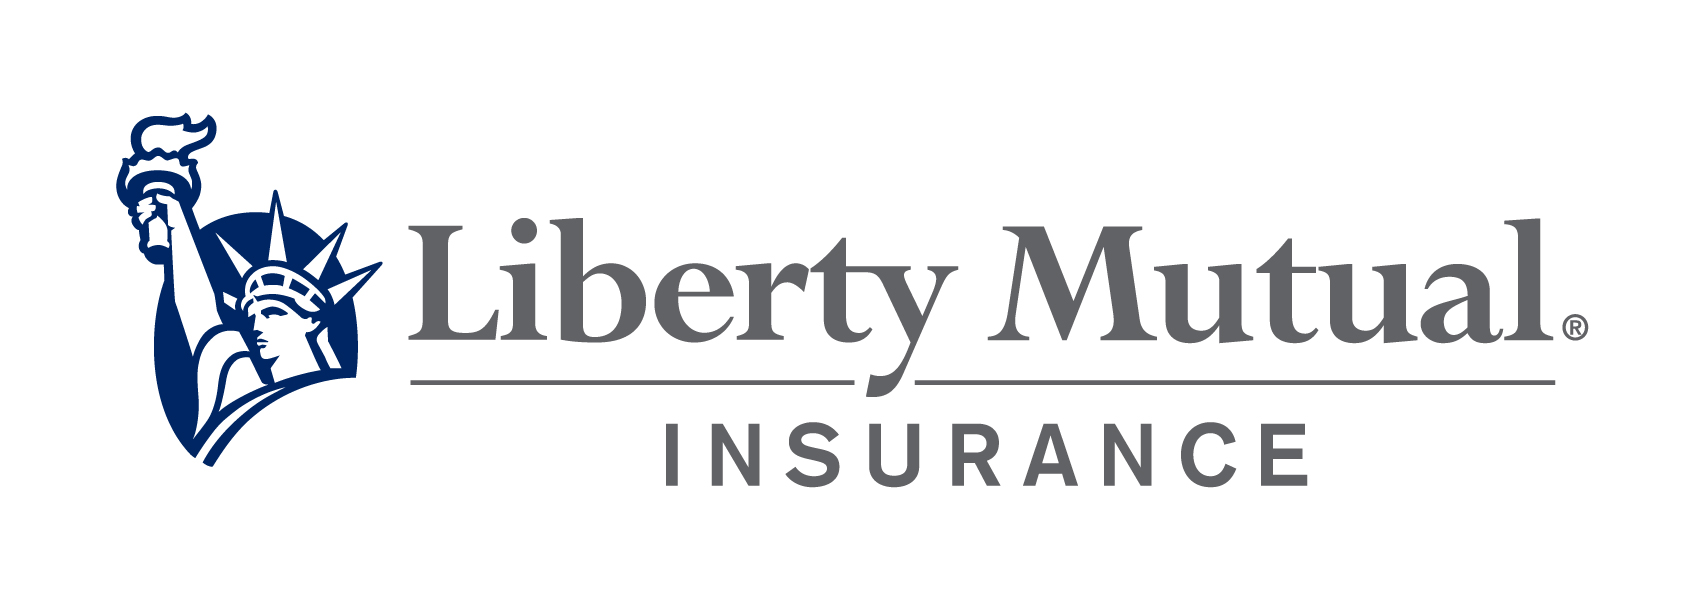 LibertyMutual_logo.jpg